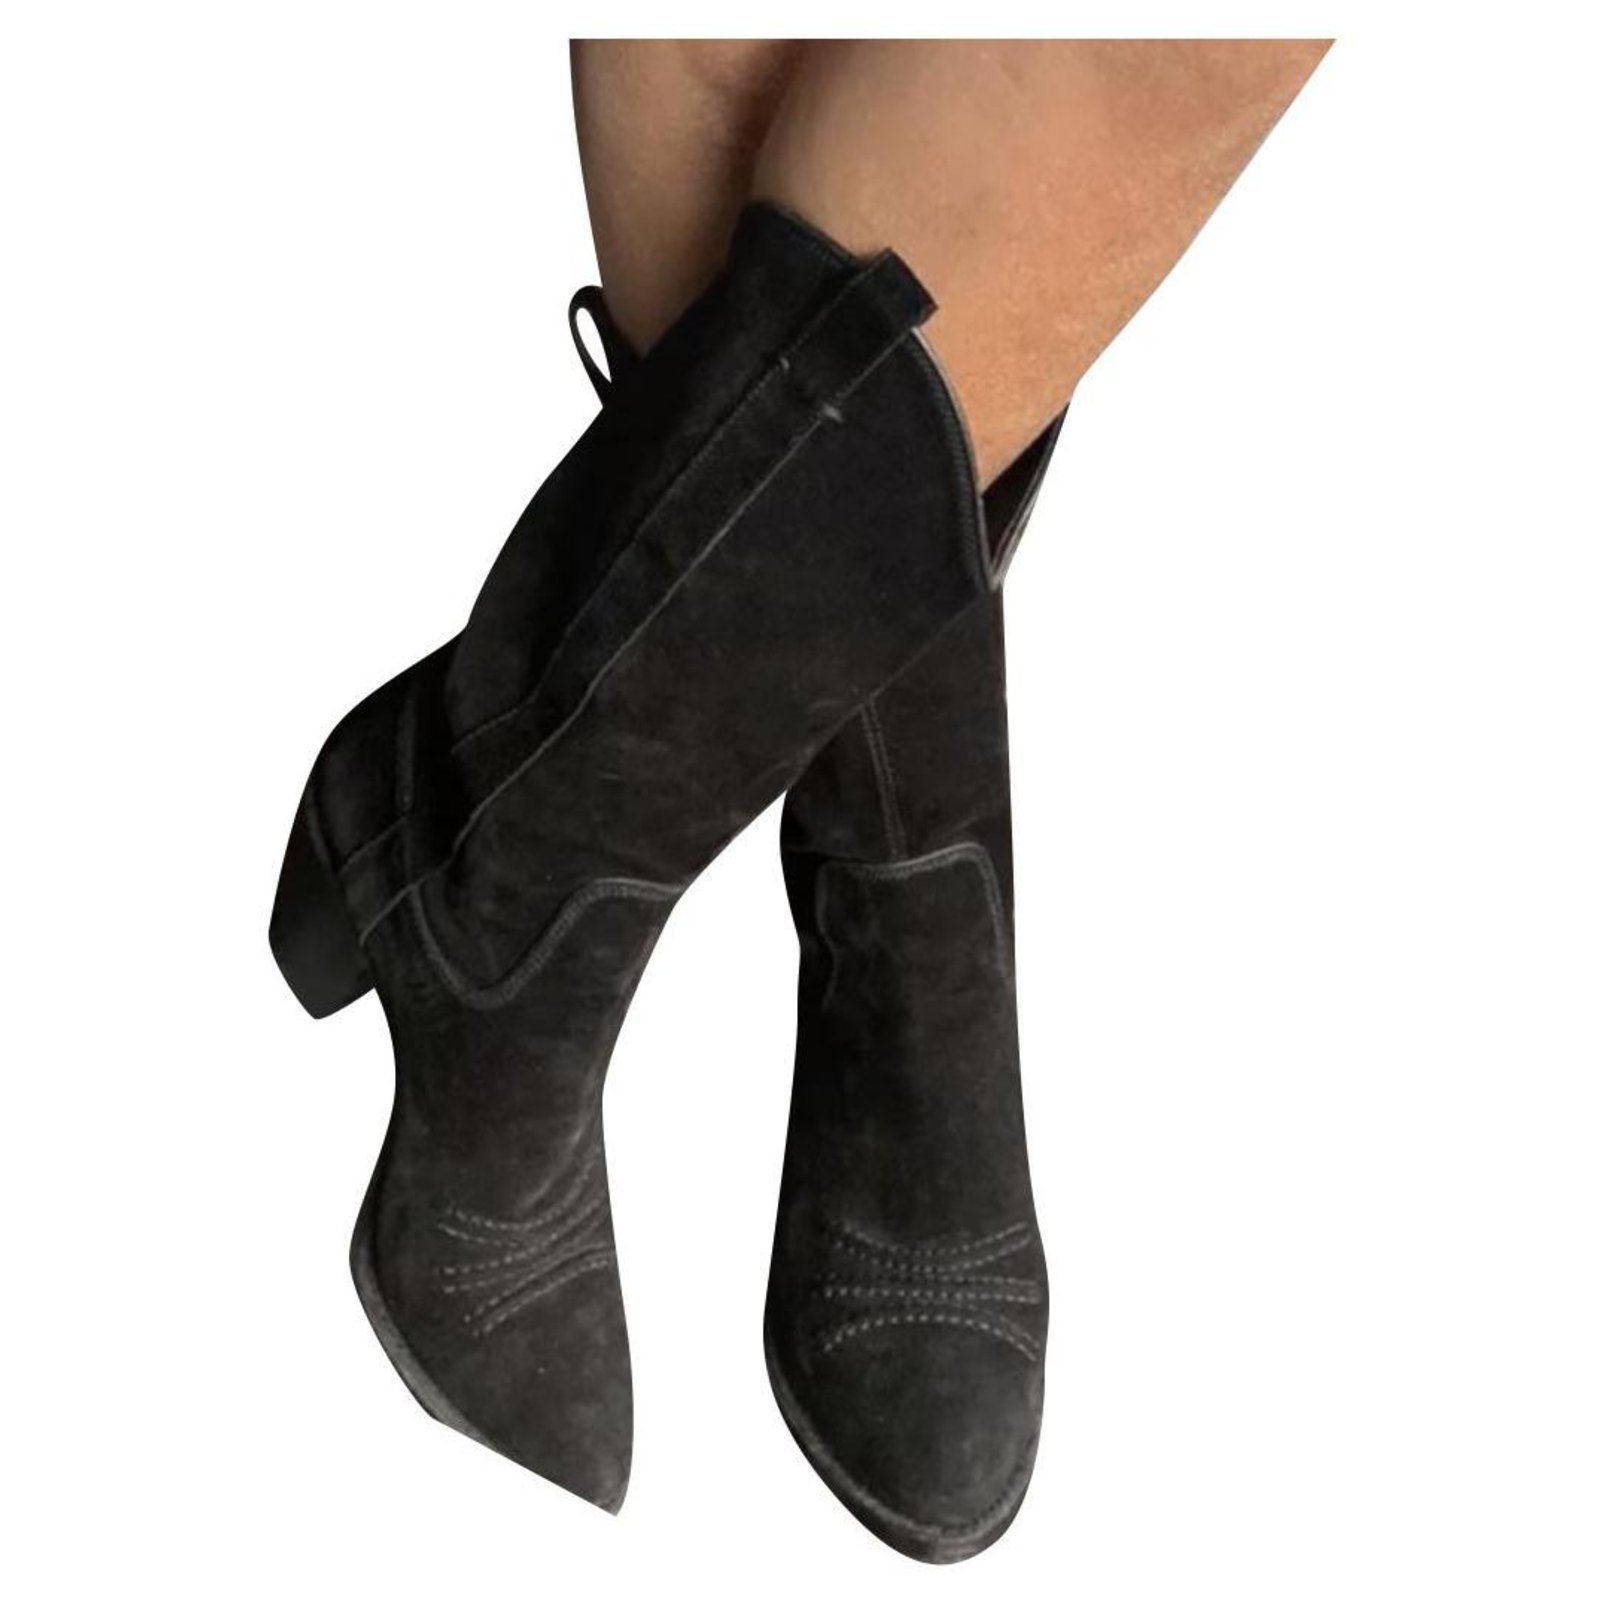 dior sock boots